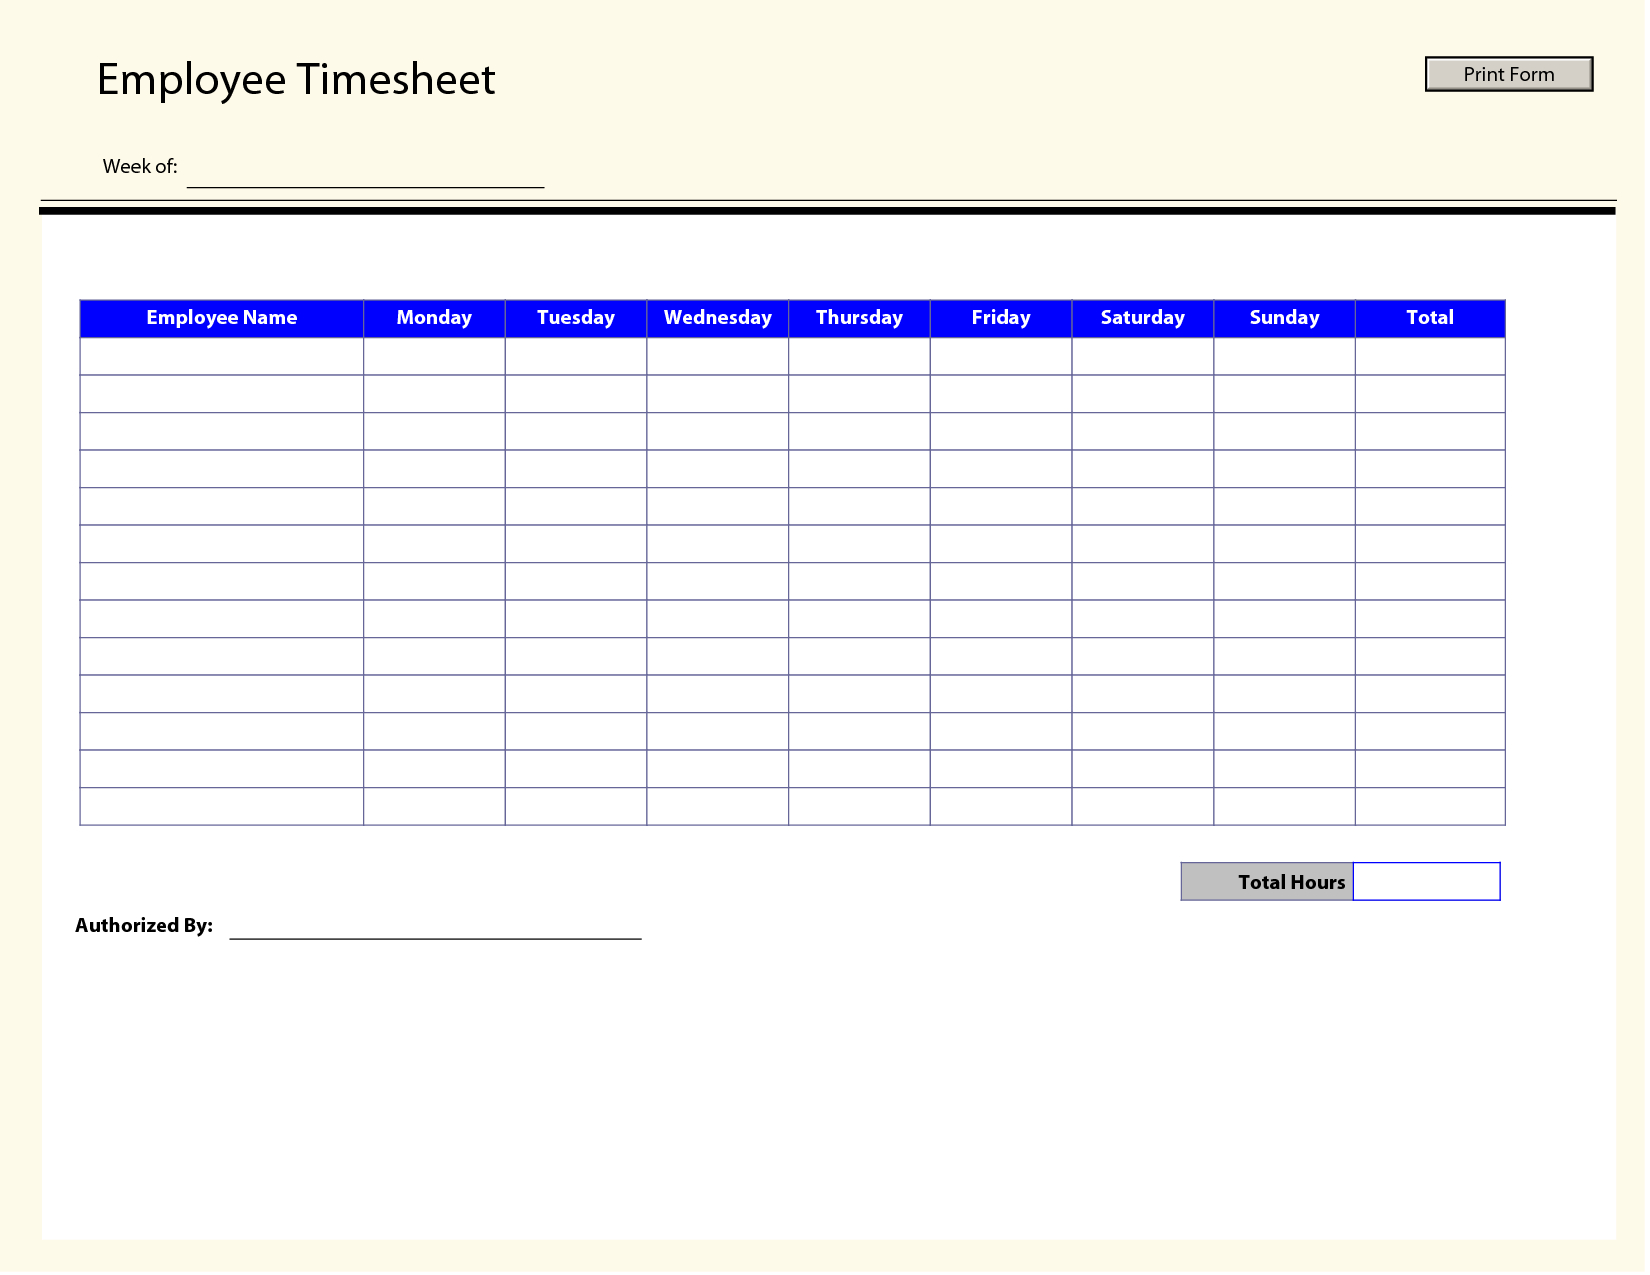 Printable Time Sheets | Free Printable Employee Timesheets Employee Timesheet Template Free Printable